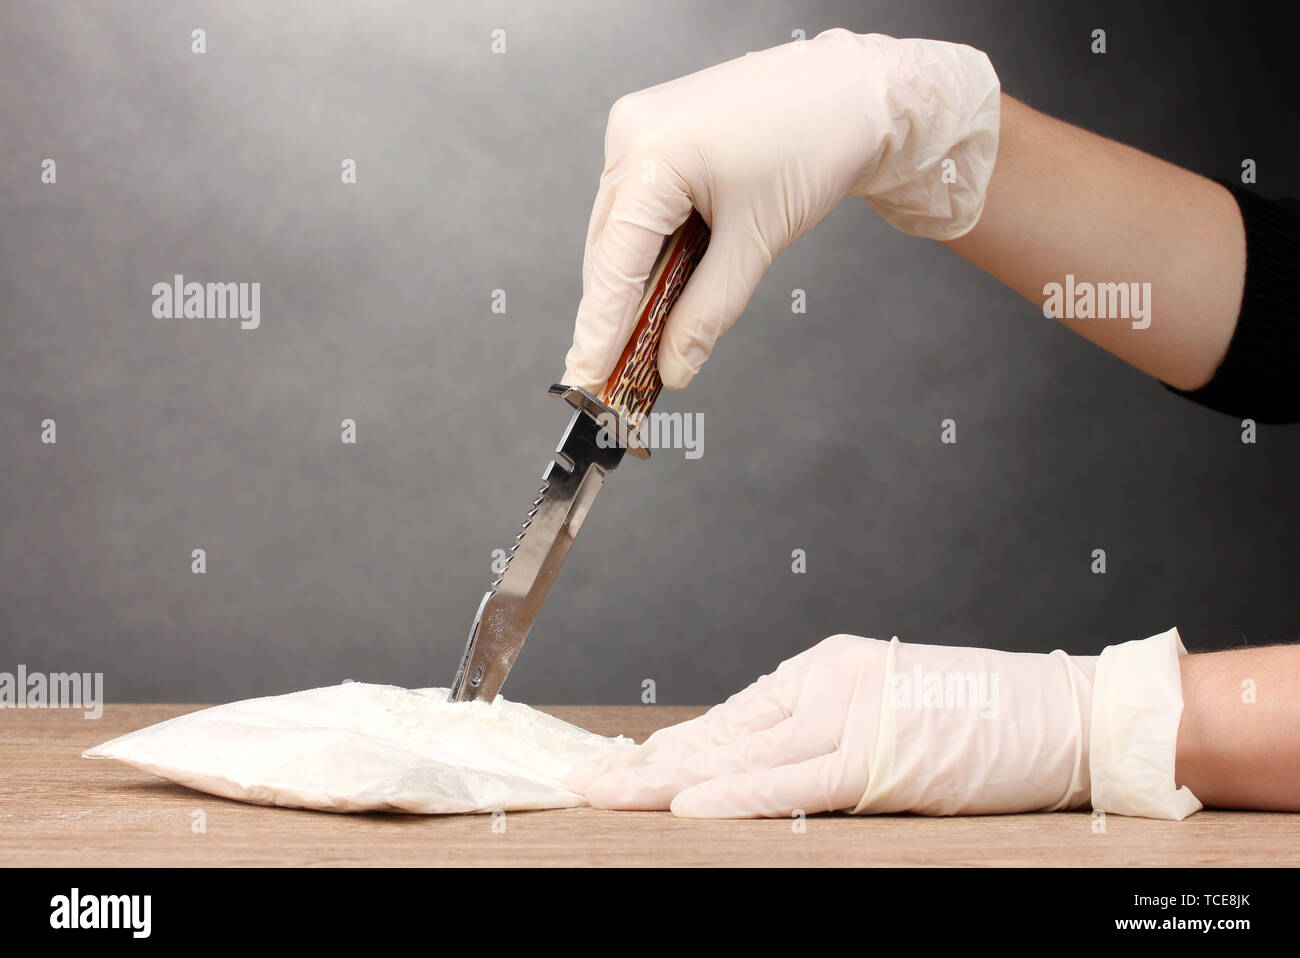 L'ouverture des paquets de cocaïne à l'aide d'un couteau sur la table en bois sur fond gris Banque D'Images